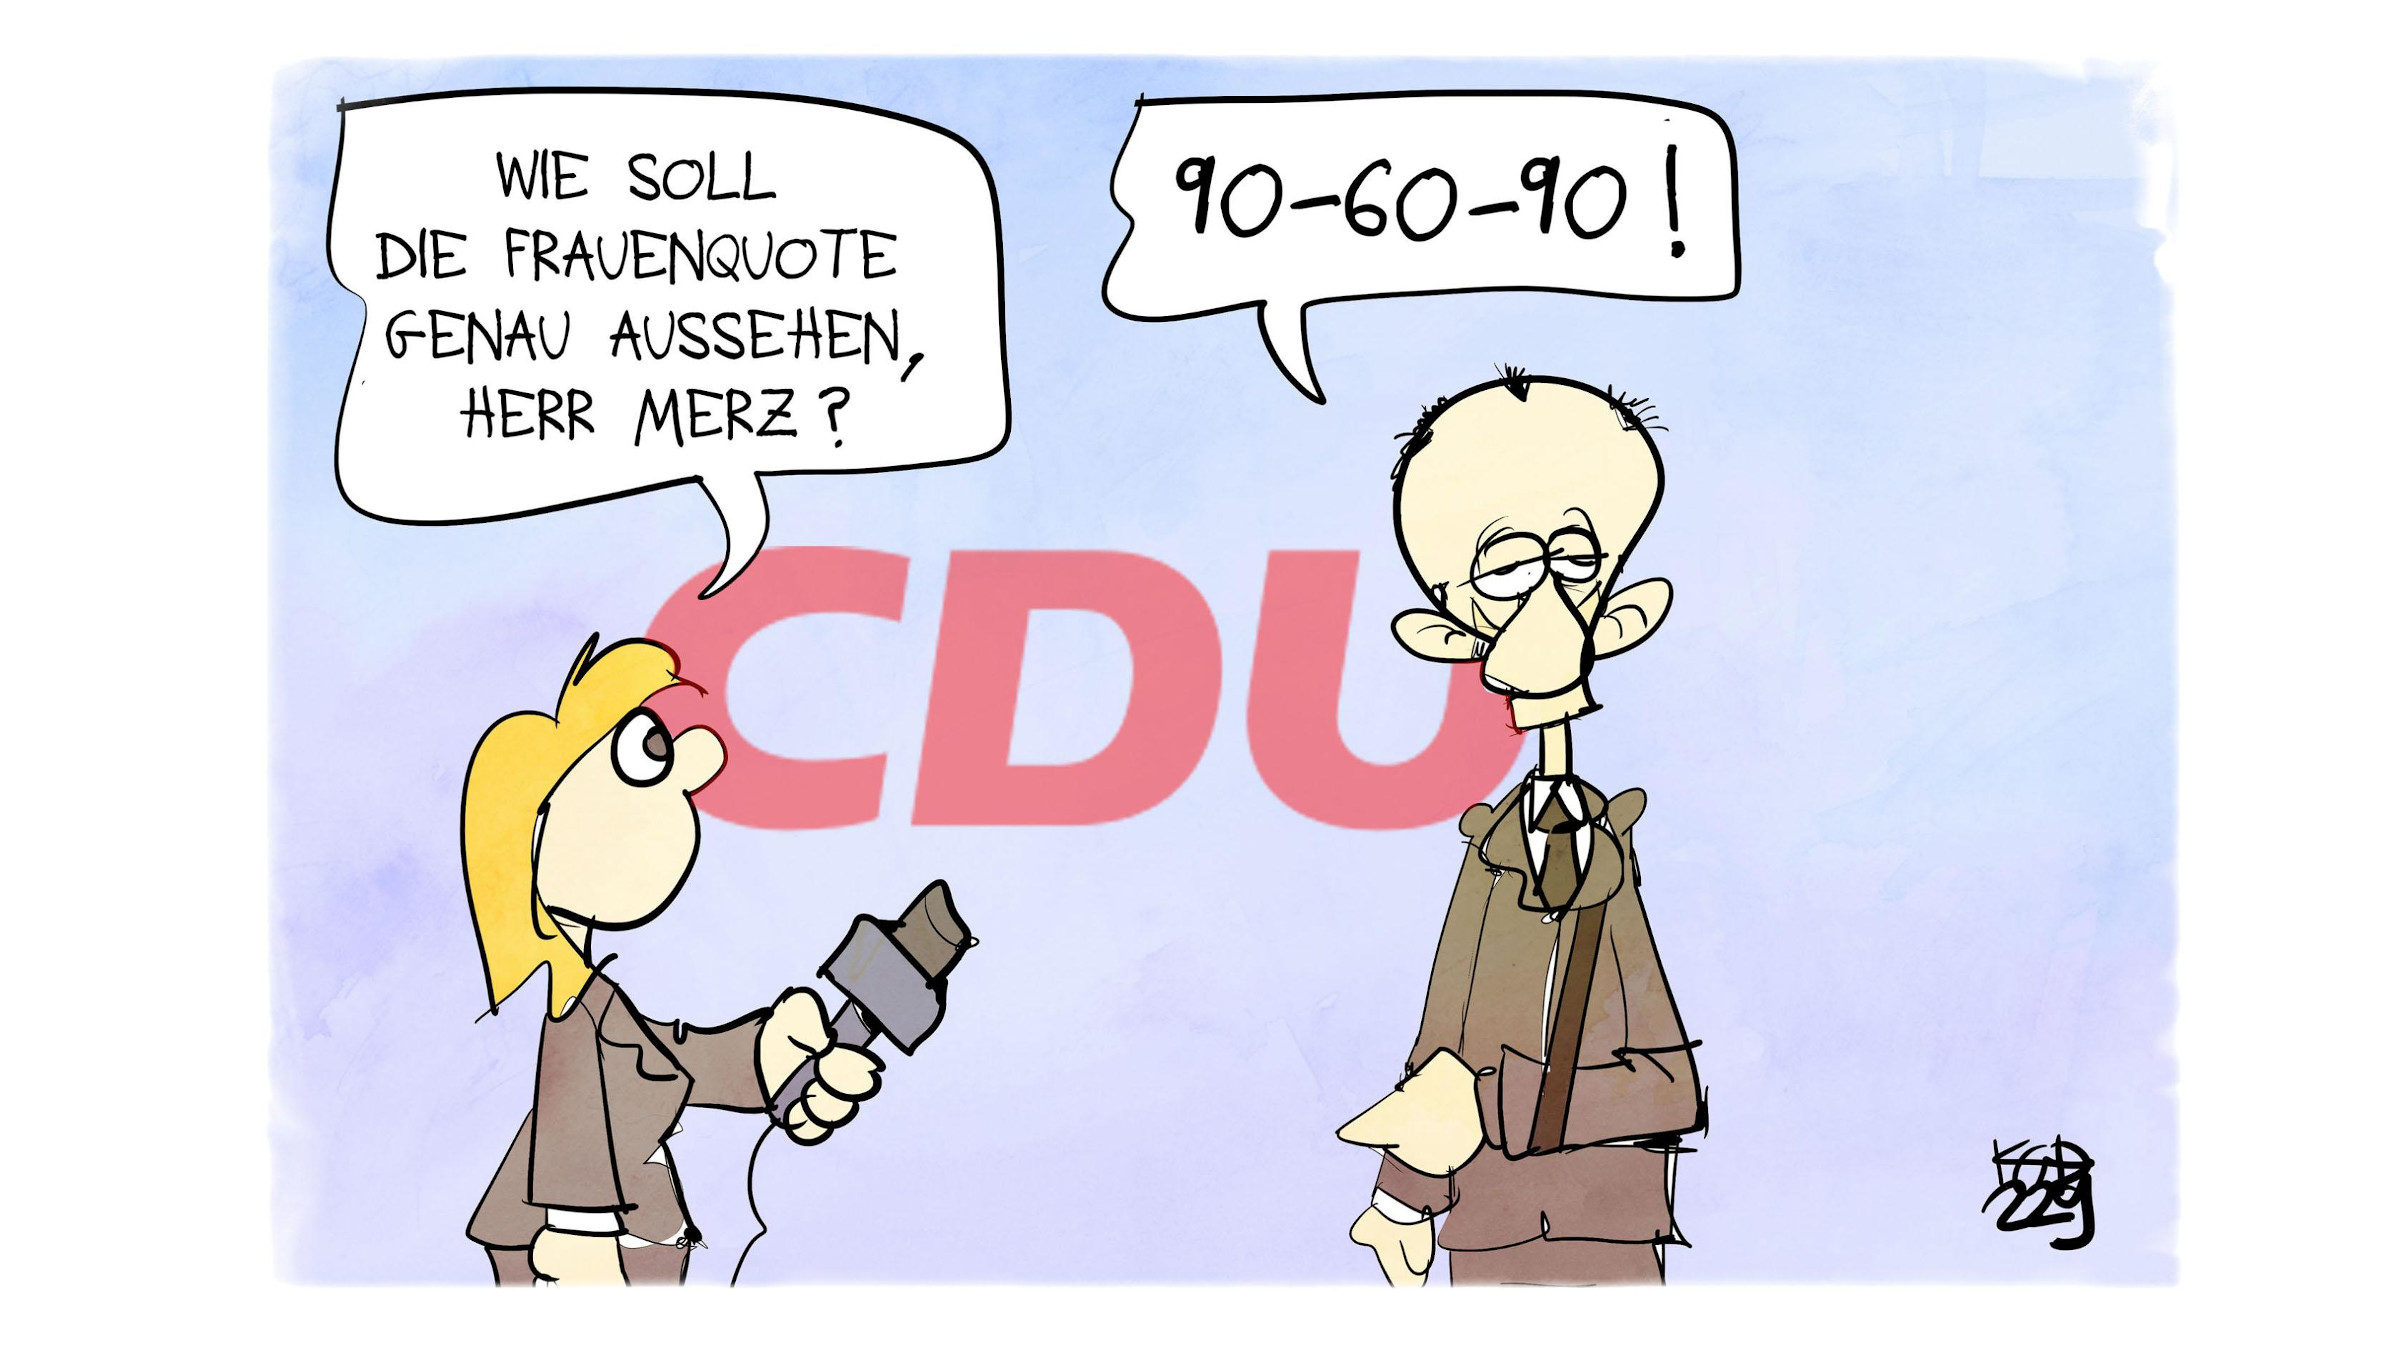 Zu sehen ist die Karikatur "Frauenquote" von Kostas Koufogiorgos. Eine Reporterin fragt CDU-Chef Friedrich Merz, wie eine Frauenquote aussehen soll. Er antwortet darauf "90-60-90".